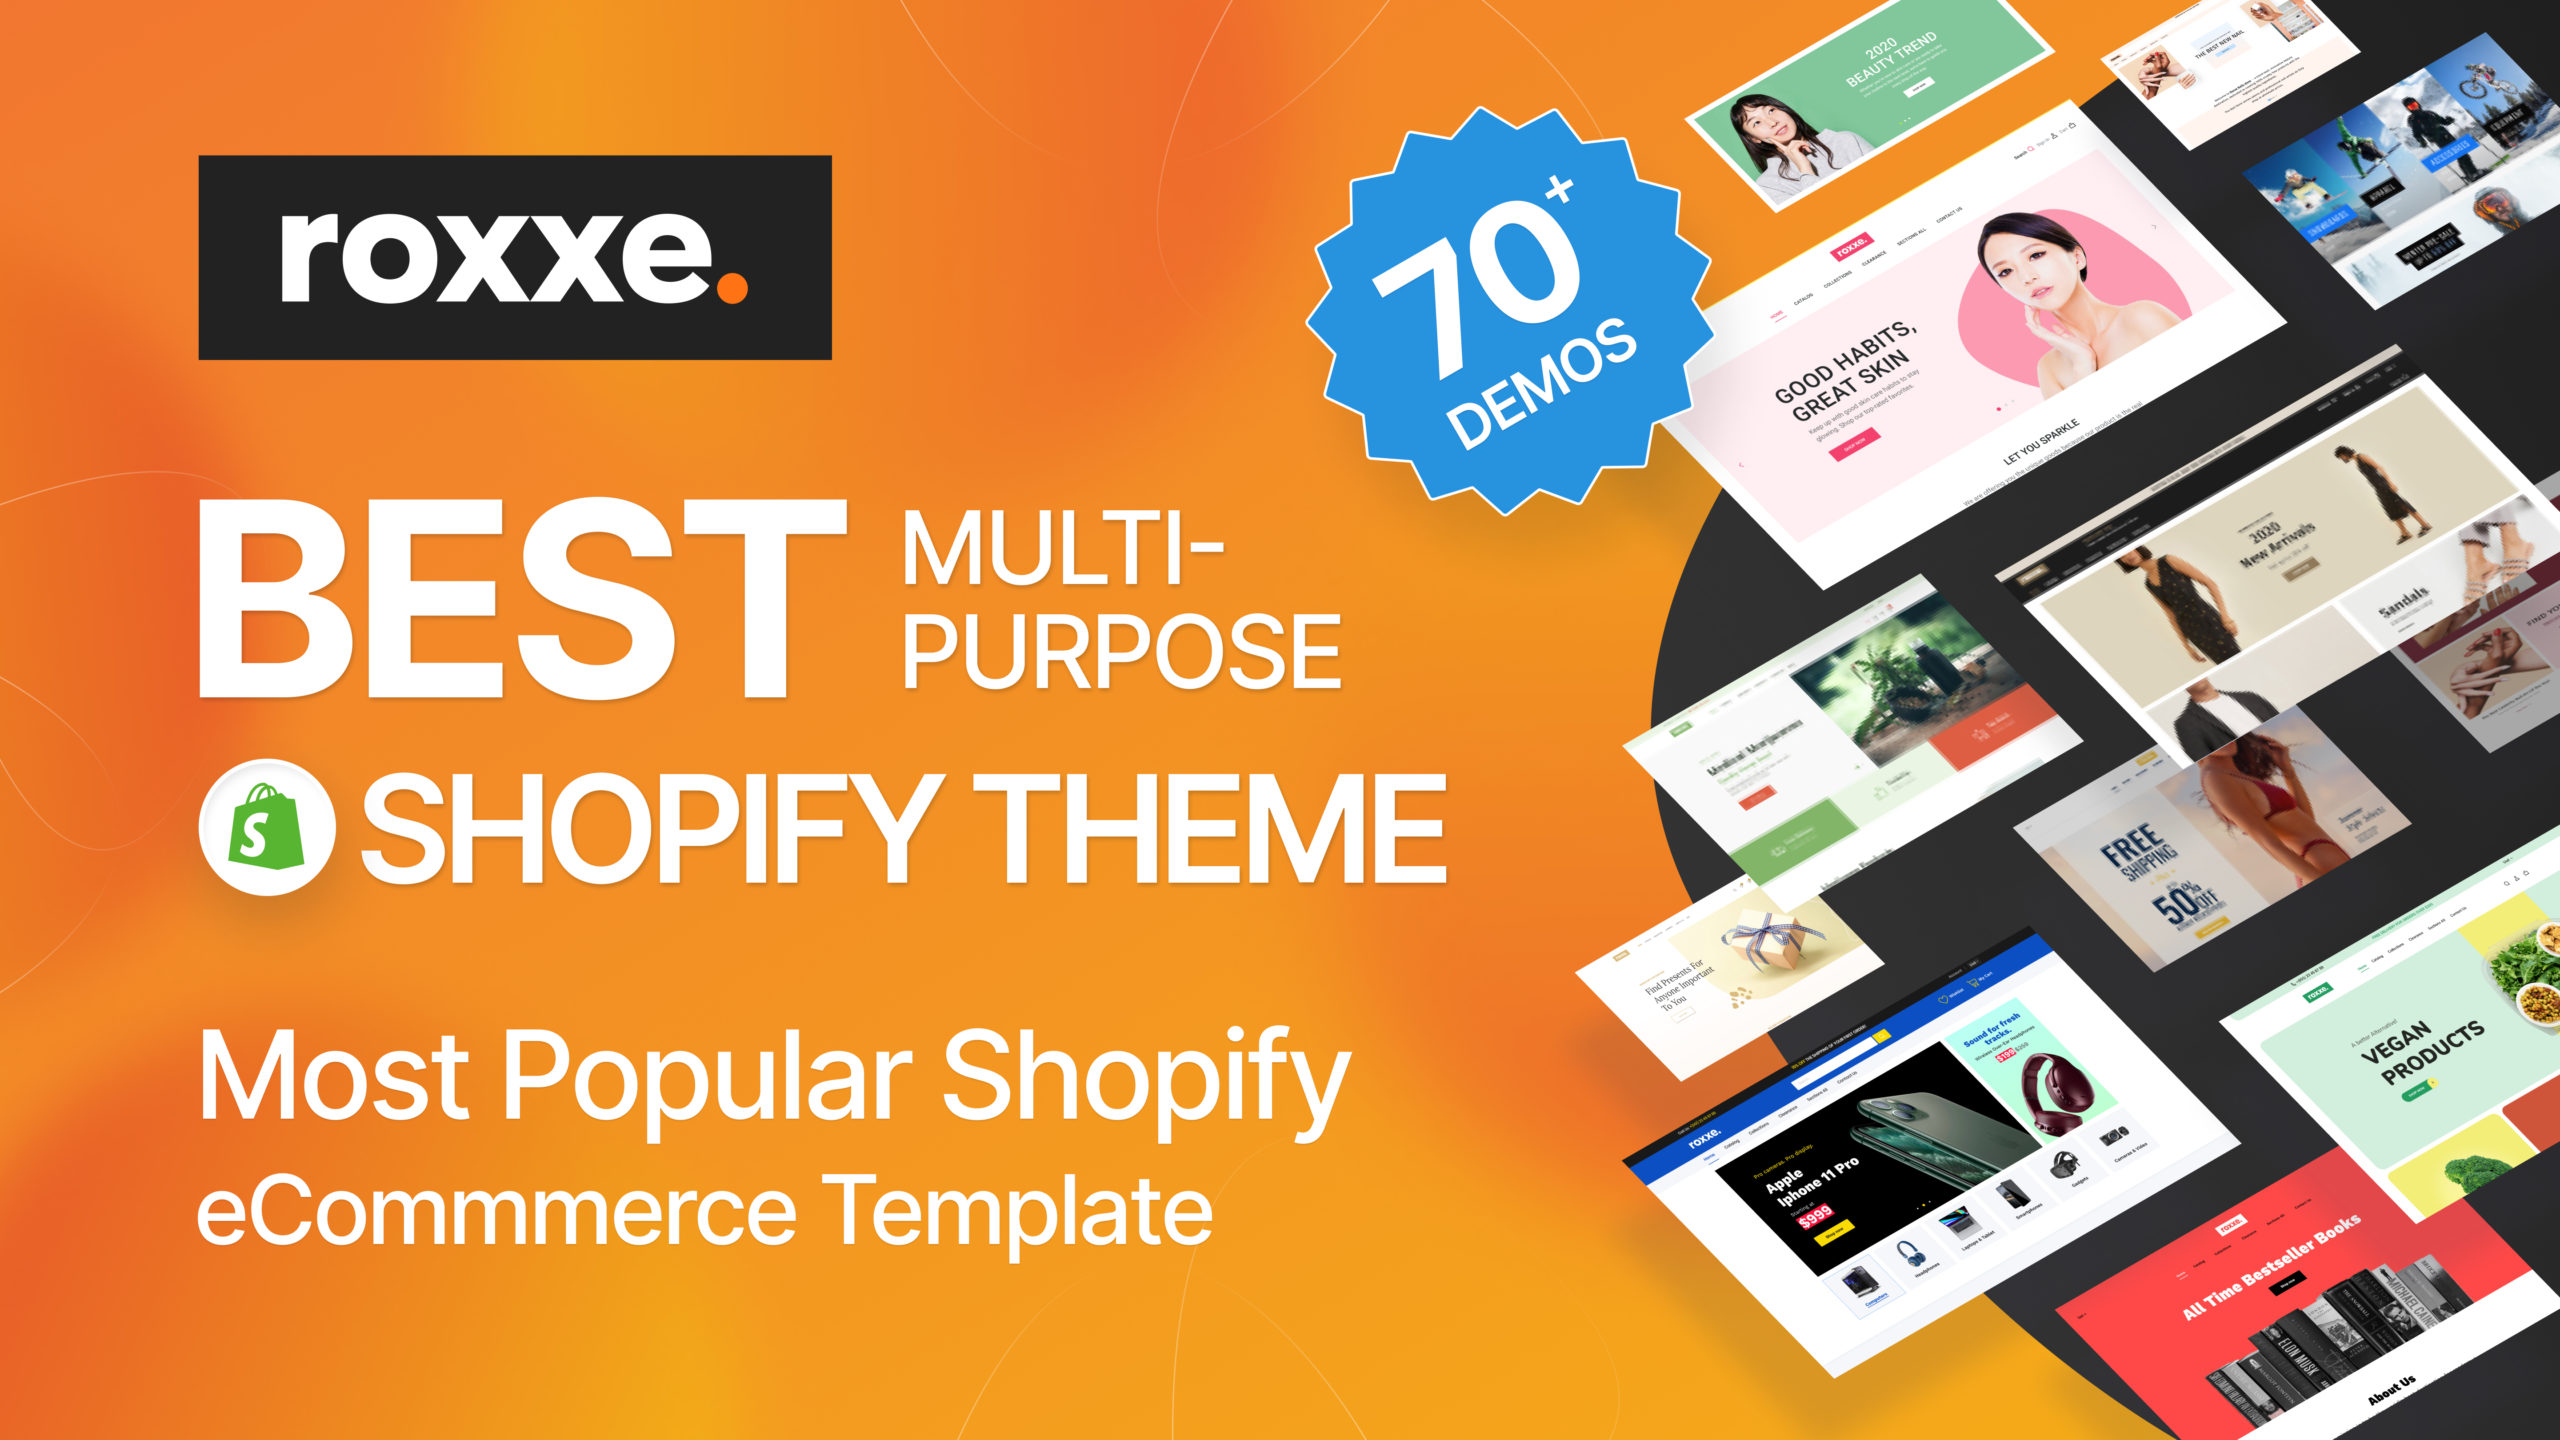 Roxxe Shopify theme